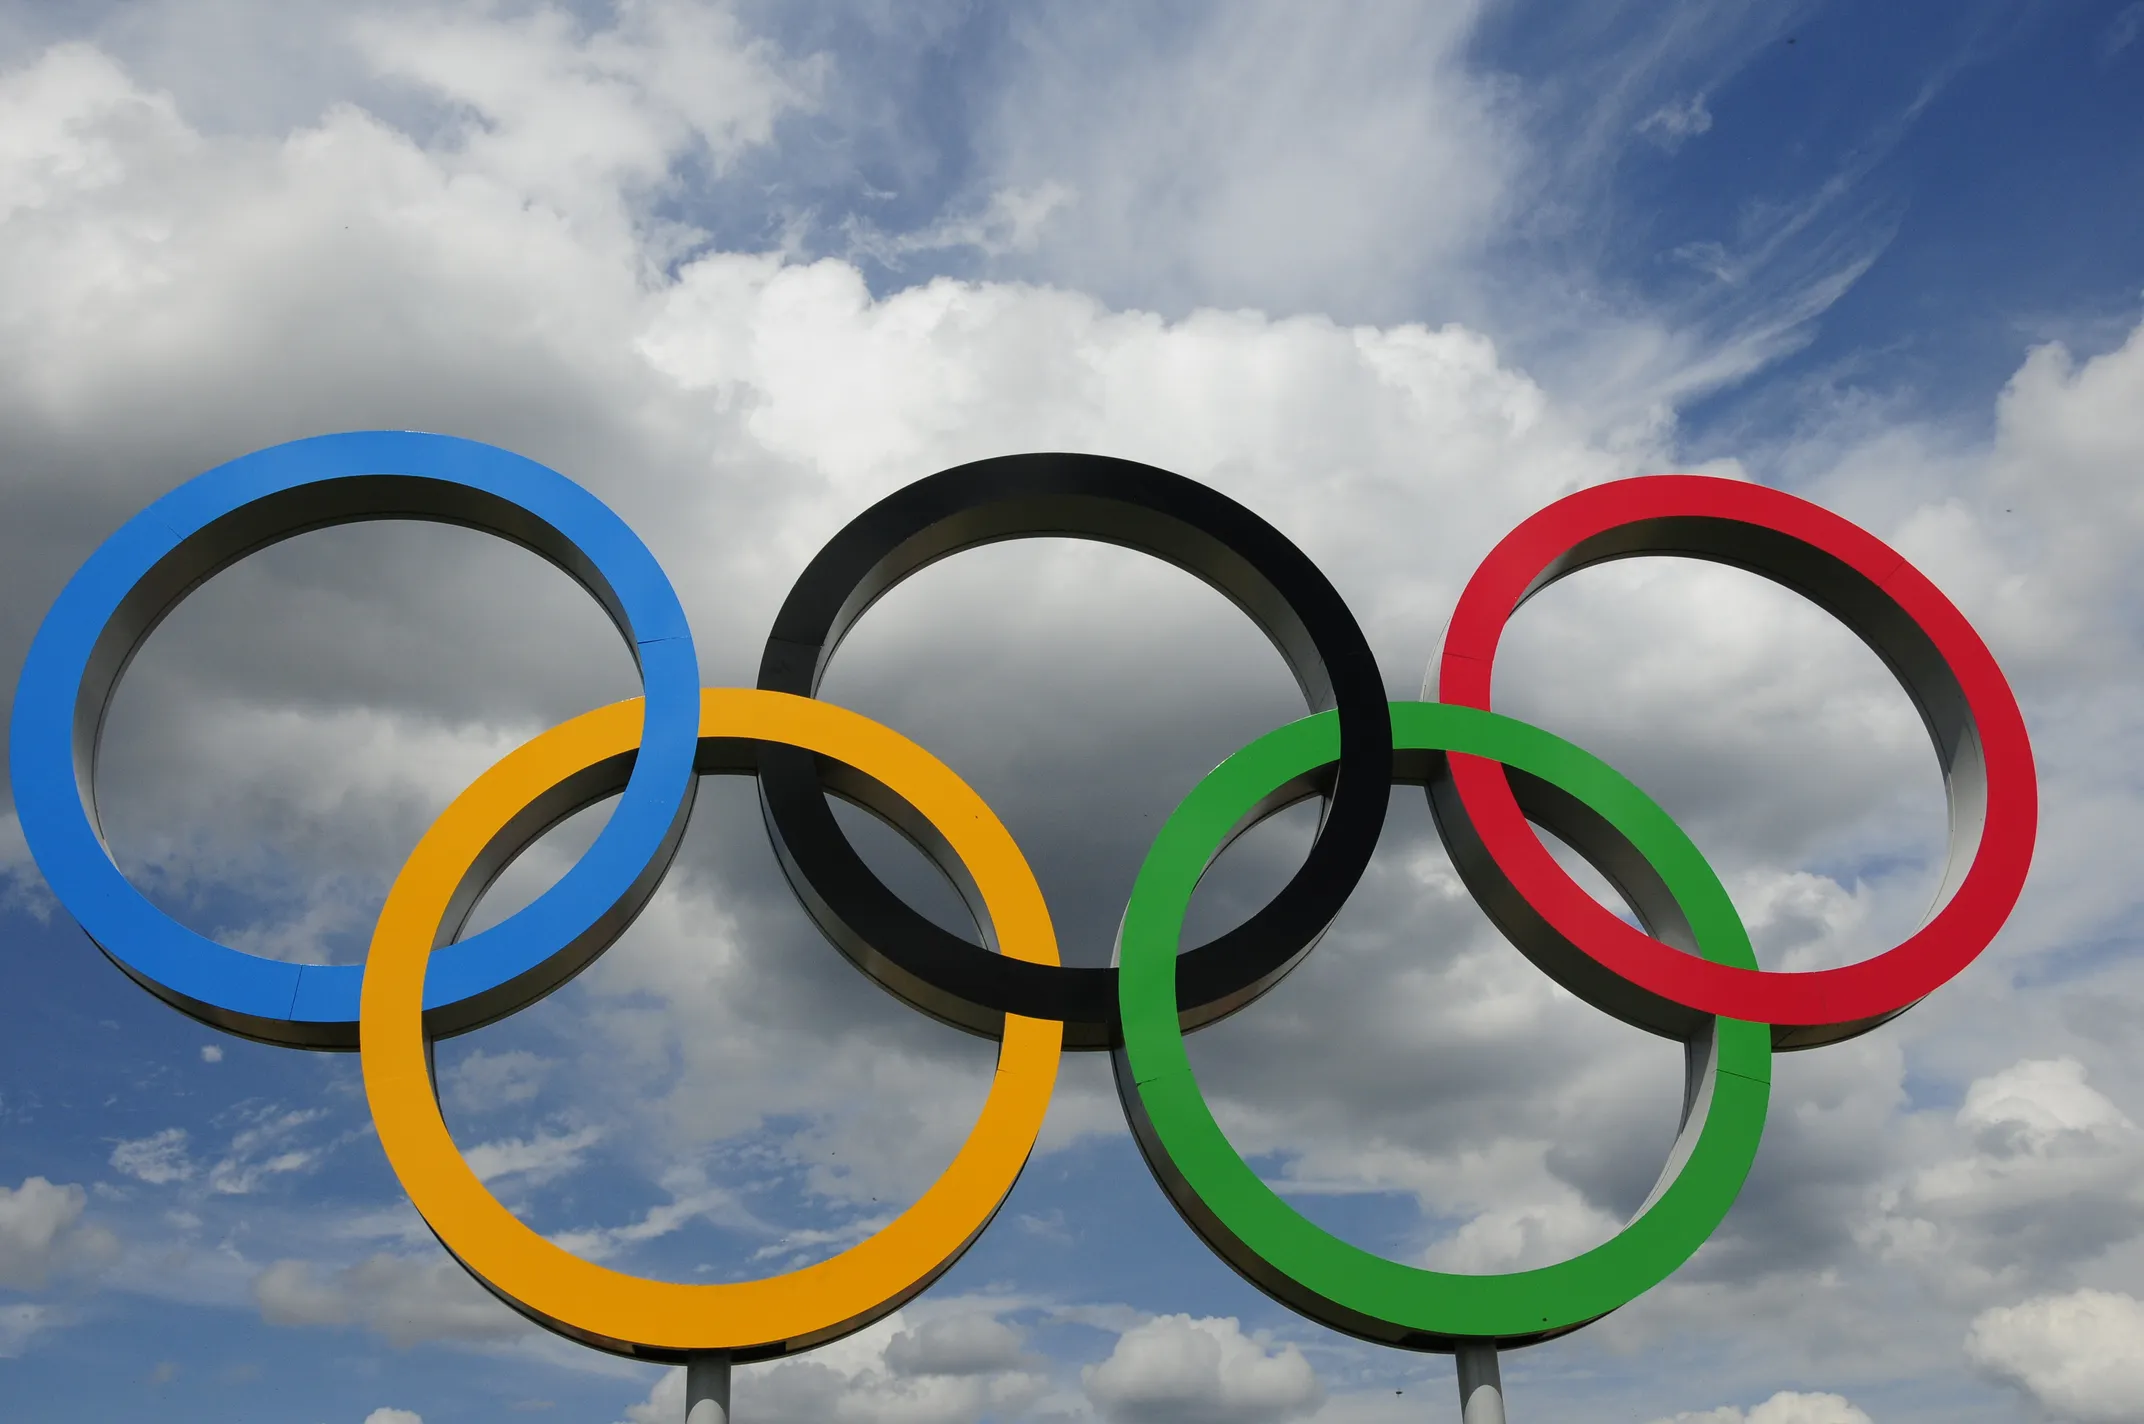 
											
											Fransiya 2030-yilgi Olimpiya o‘yinlariga mezbonlik qiladi
											
											